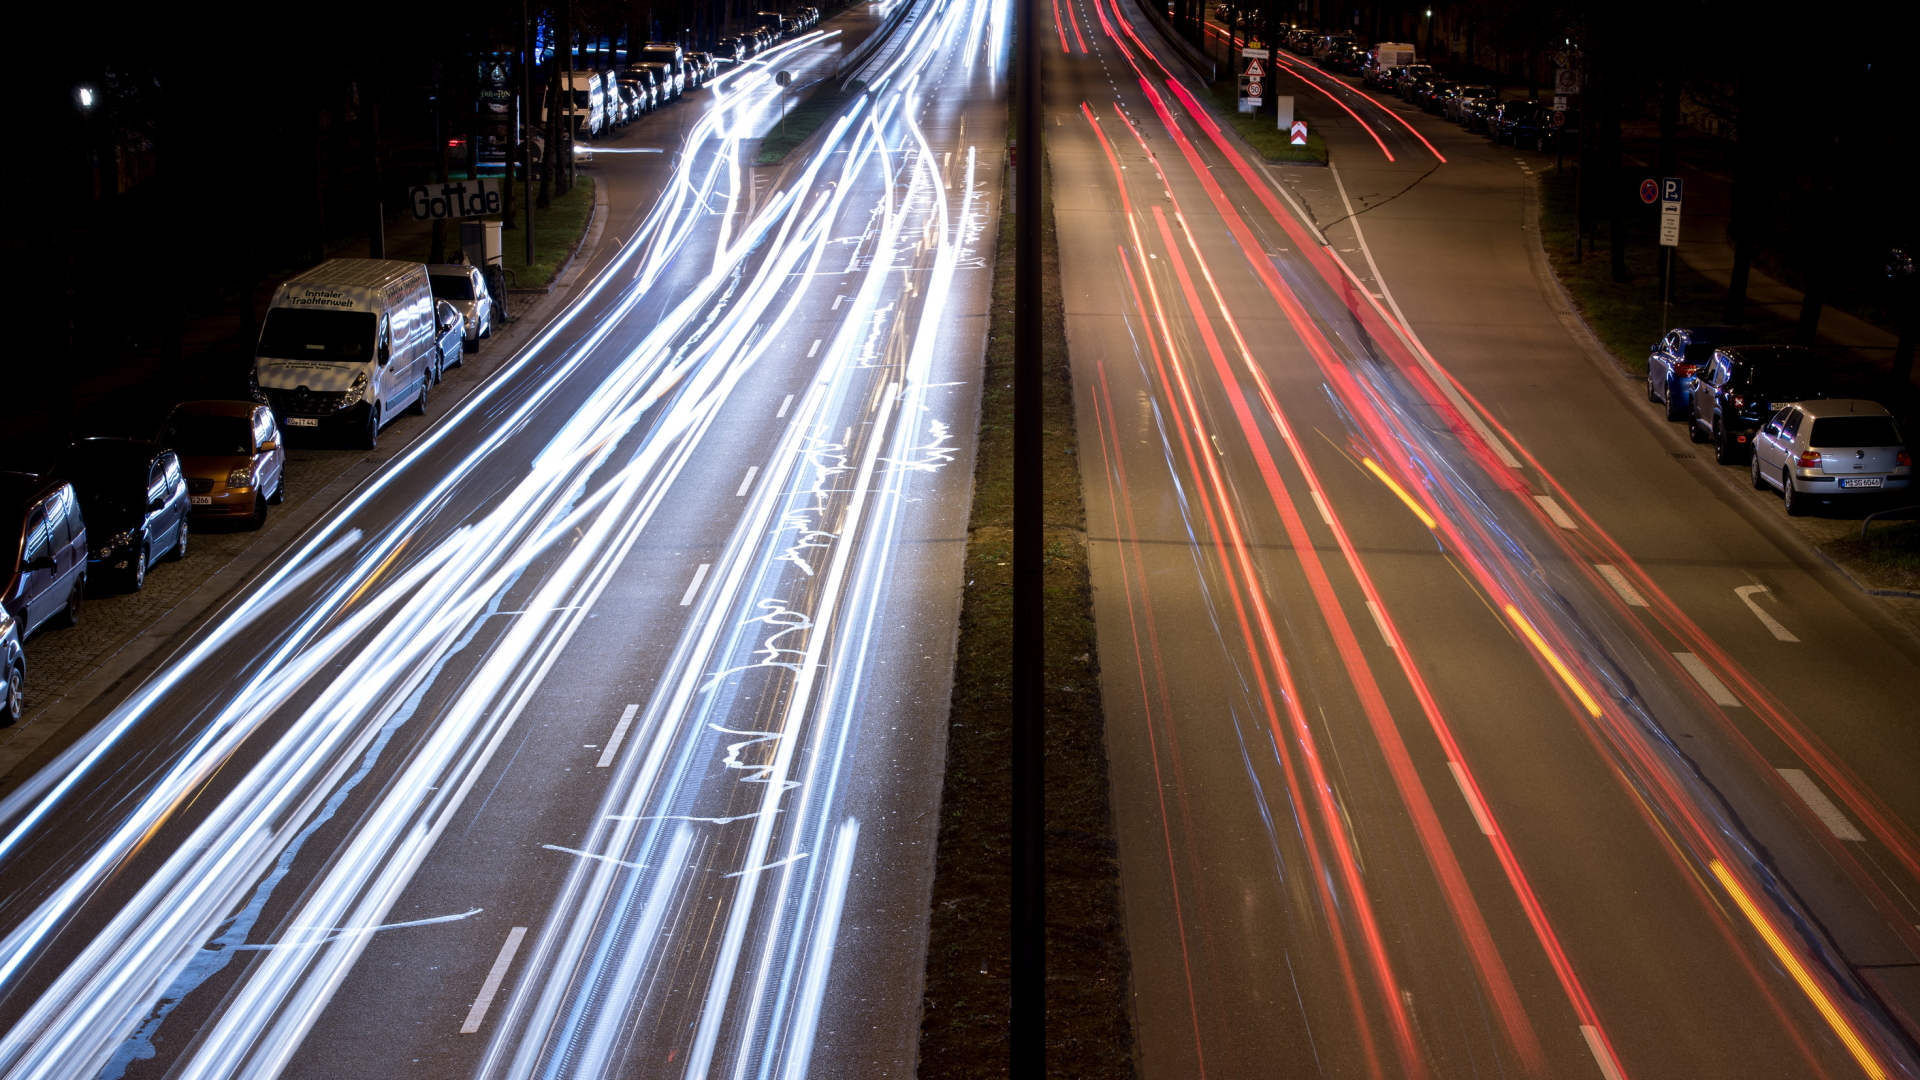 Fahrzeuge auf einer Münchener Straße hinterlassen bunte Lichtspuren. | Bildquelle: dpa